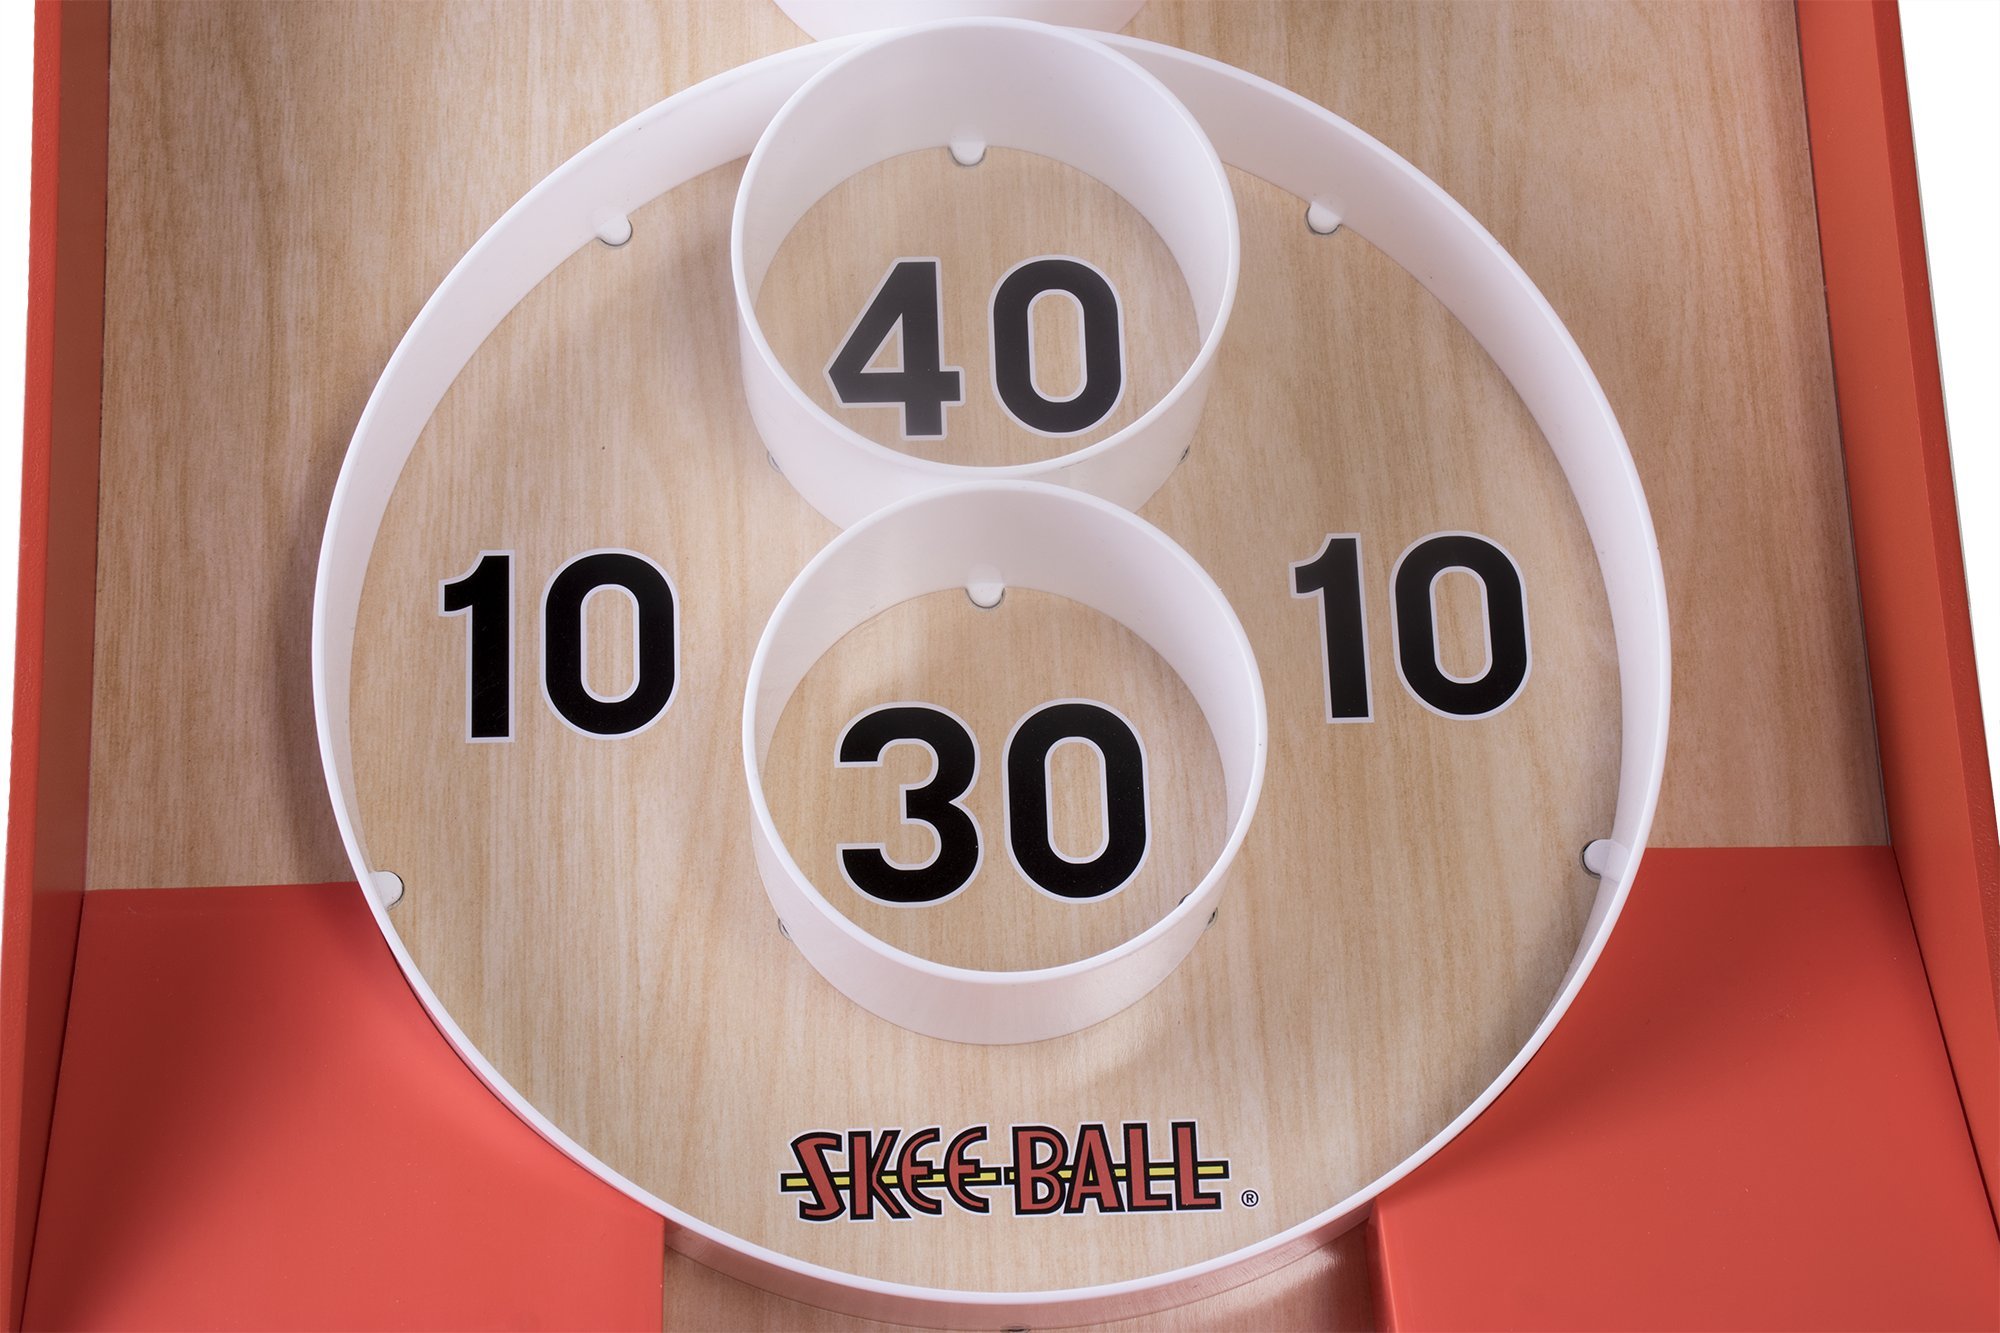 Buffalo Games - Skee-Ball